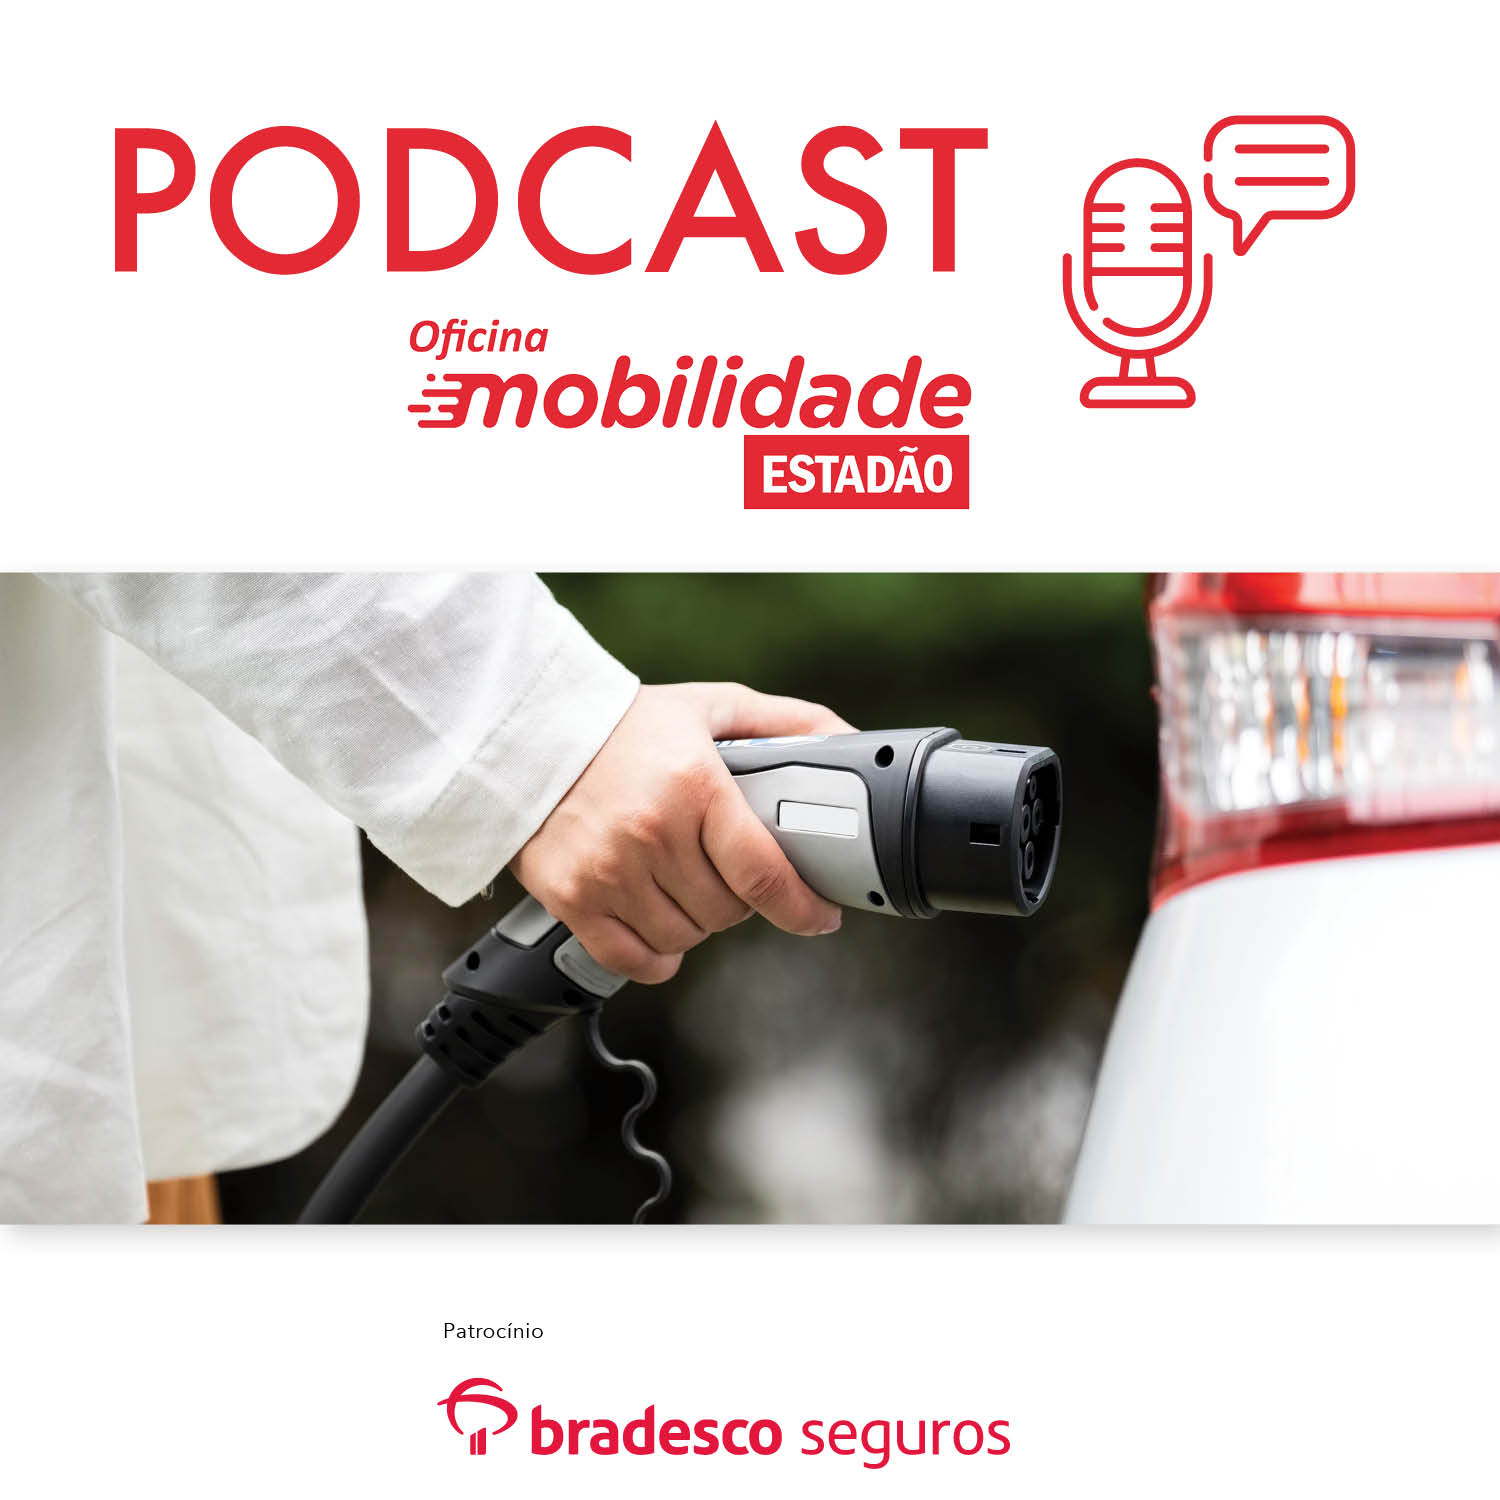 Podcast Oficina Mobilidade #1: Guia de boas práticas para o uso do carro elétrico